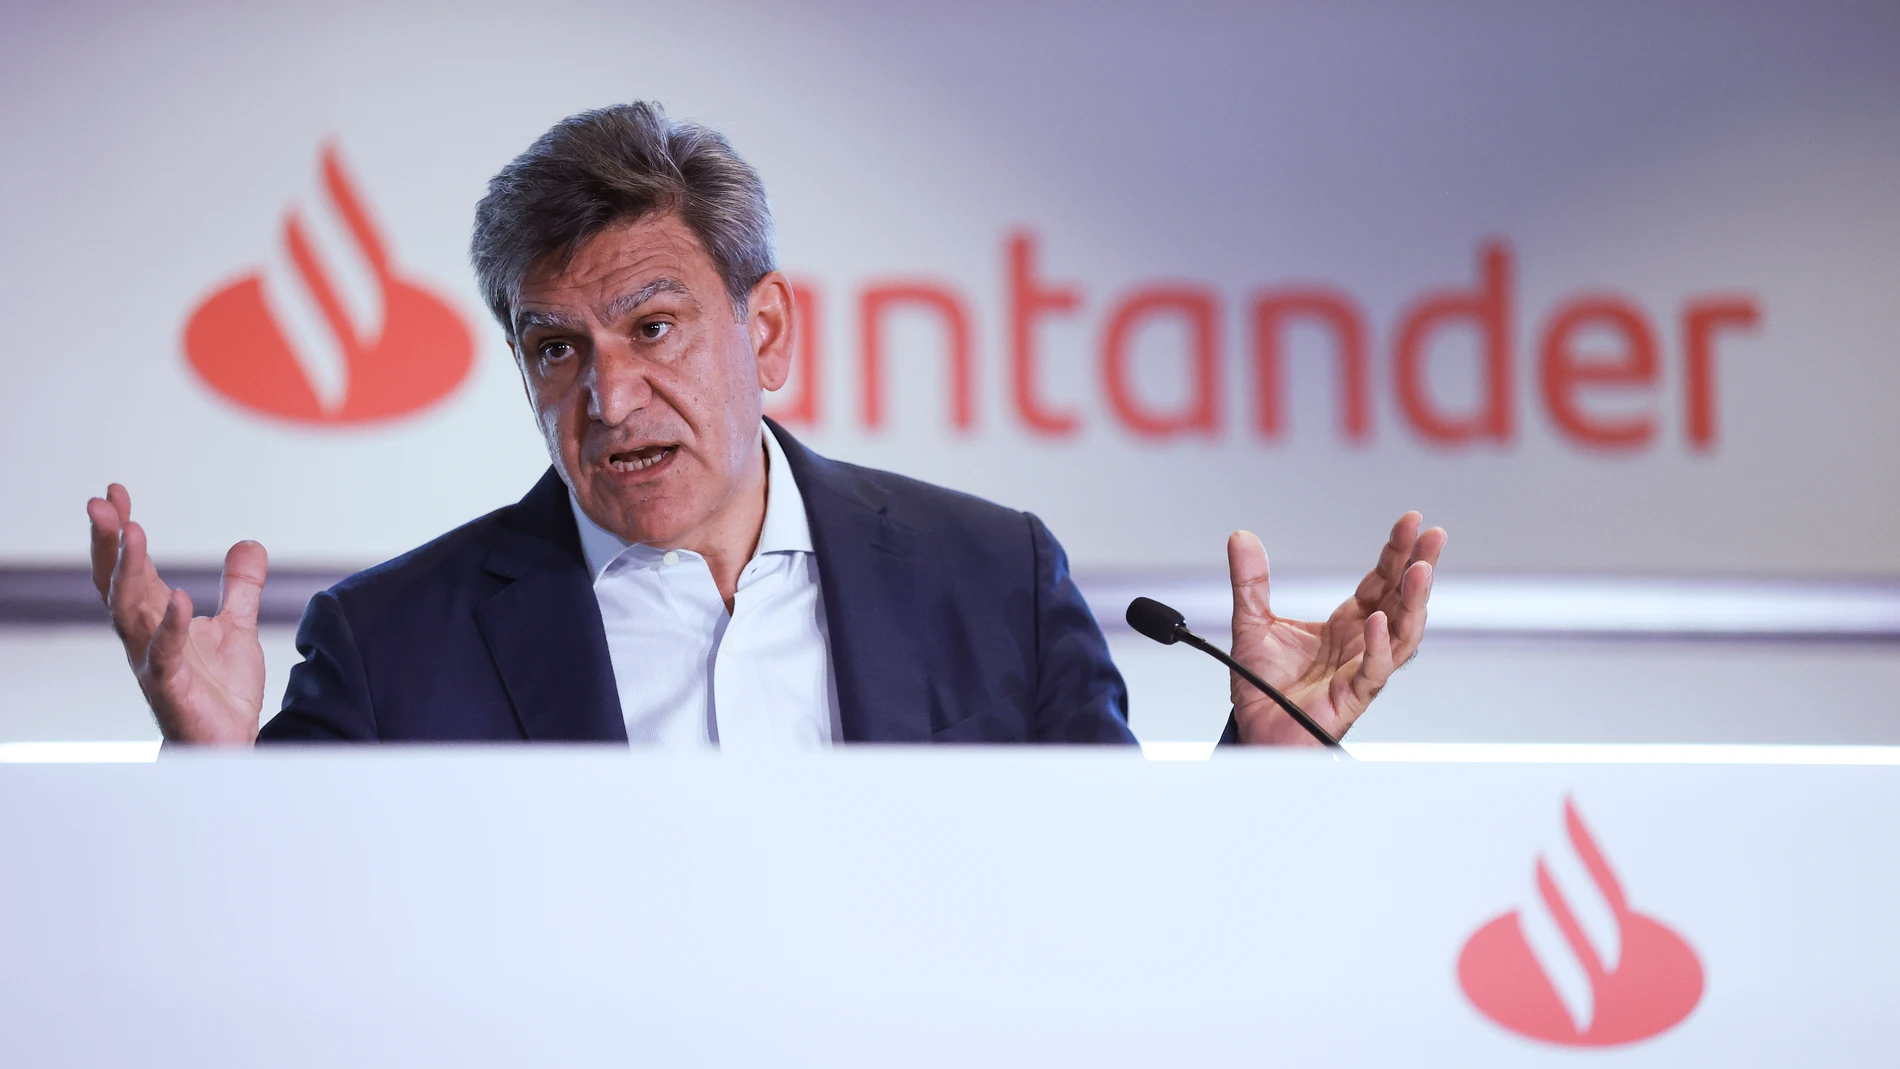 El consejero delegado del Banco Santander, José Antonio Álvarez, durante la rueda de prensa ofrecida este miércoles para presentar los resultados de Grupo del tercer trimestre